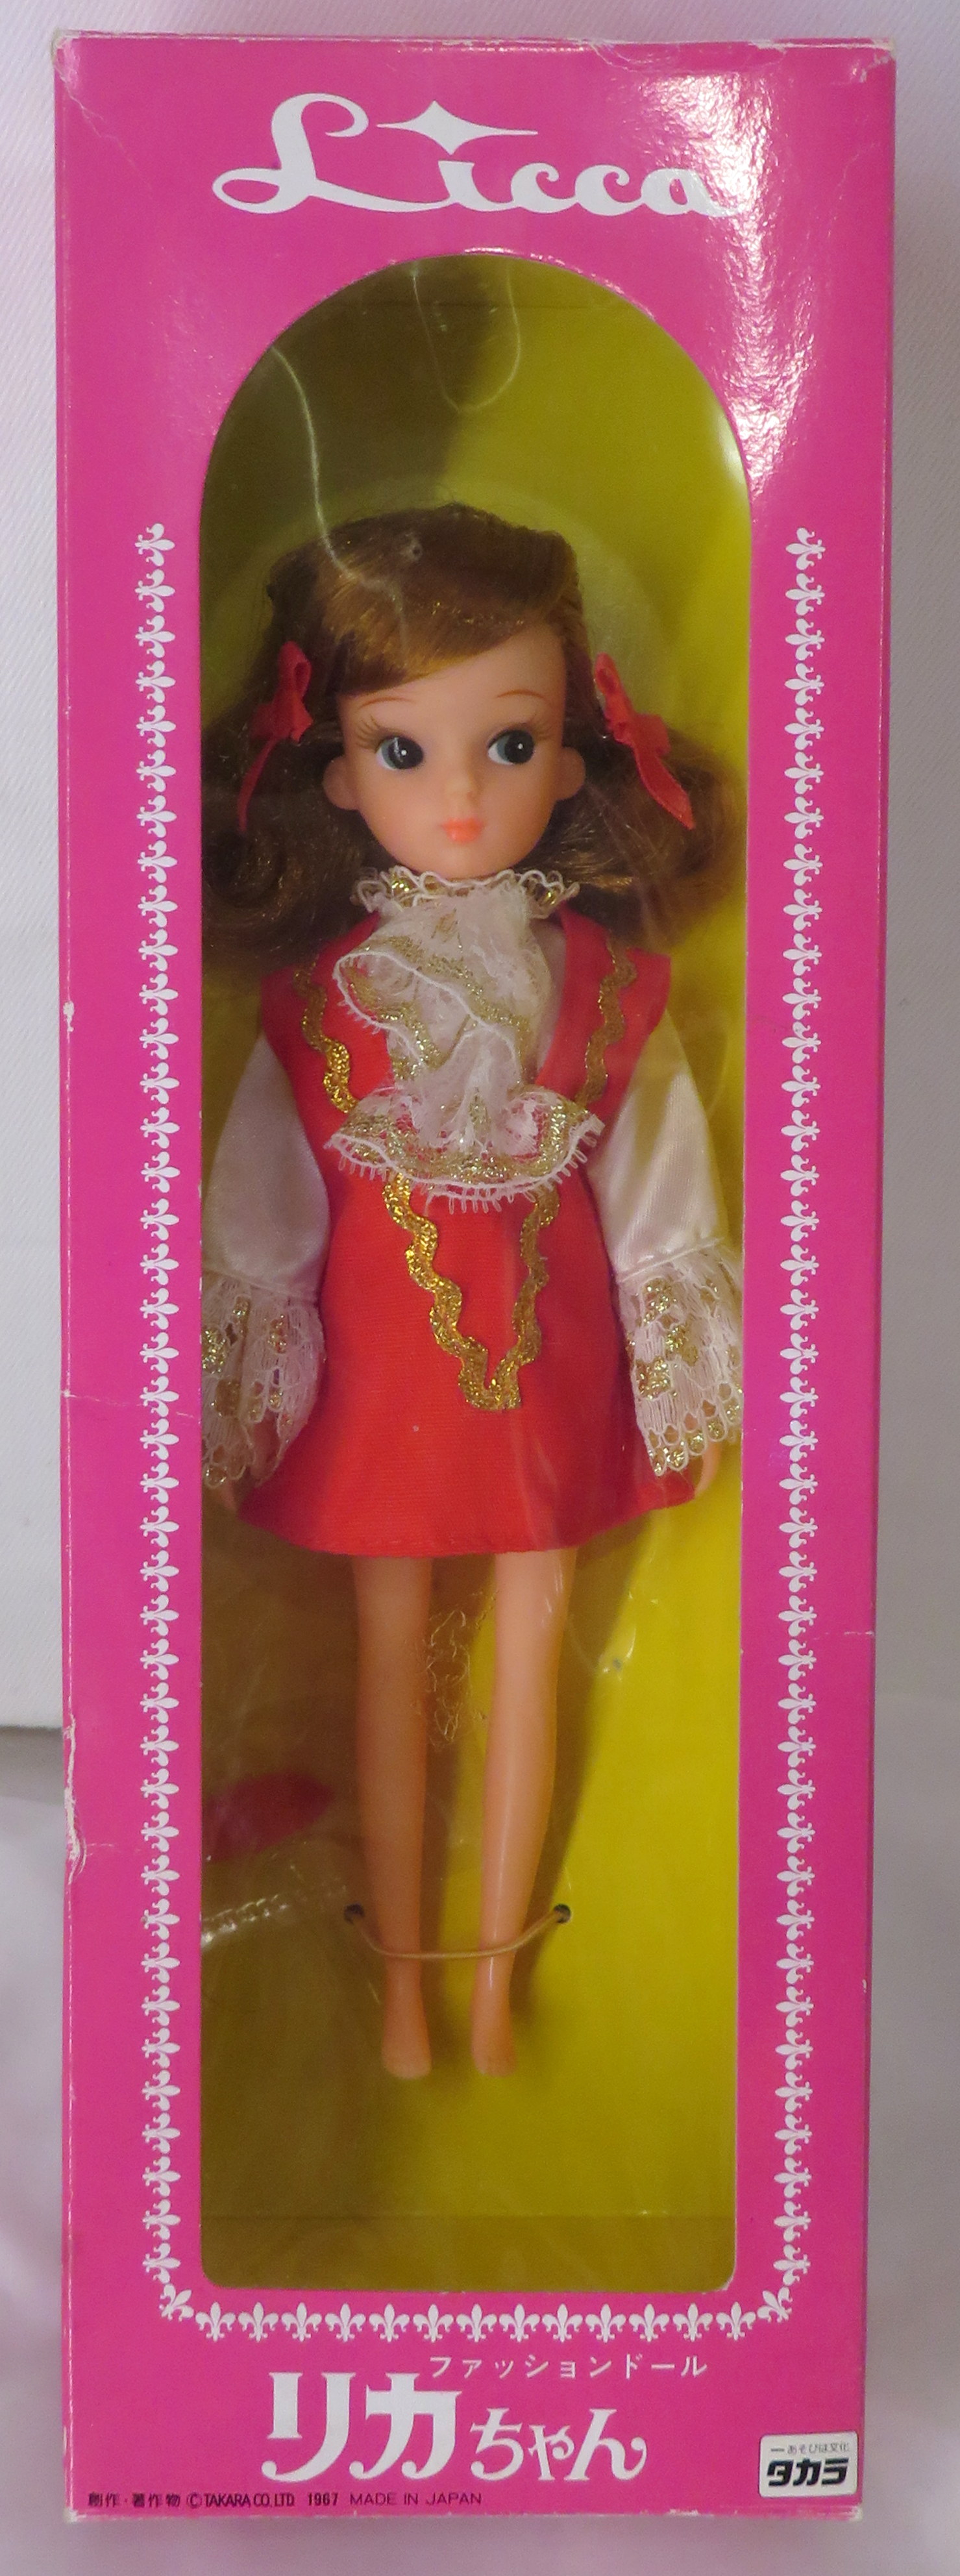 希少 当時物 1968年 初代リカちゃん【フルオリジナル】美品 おもちゃ/人形 良い製品